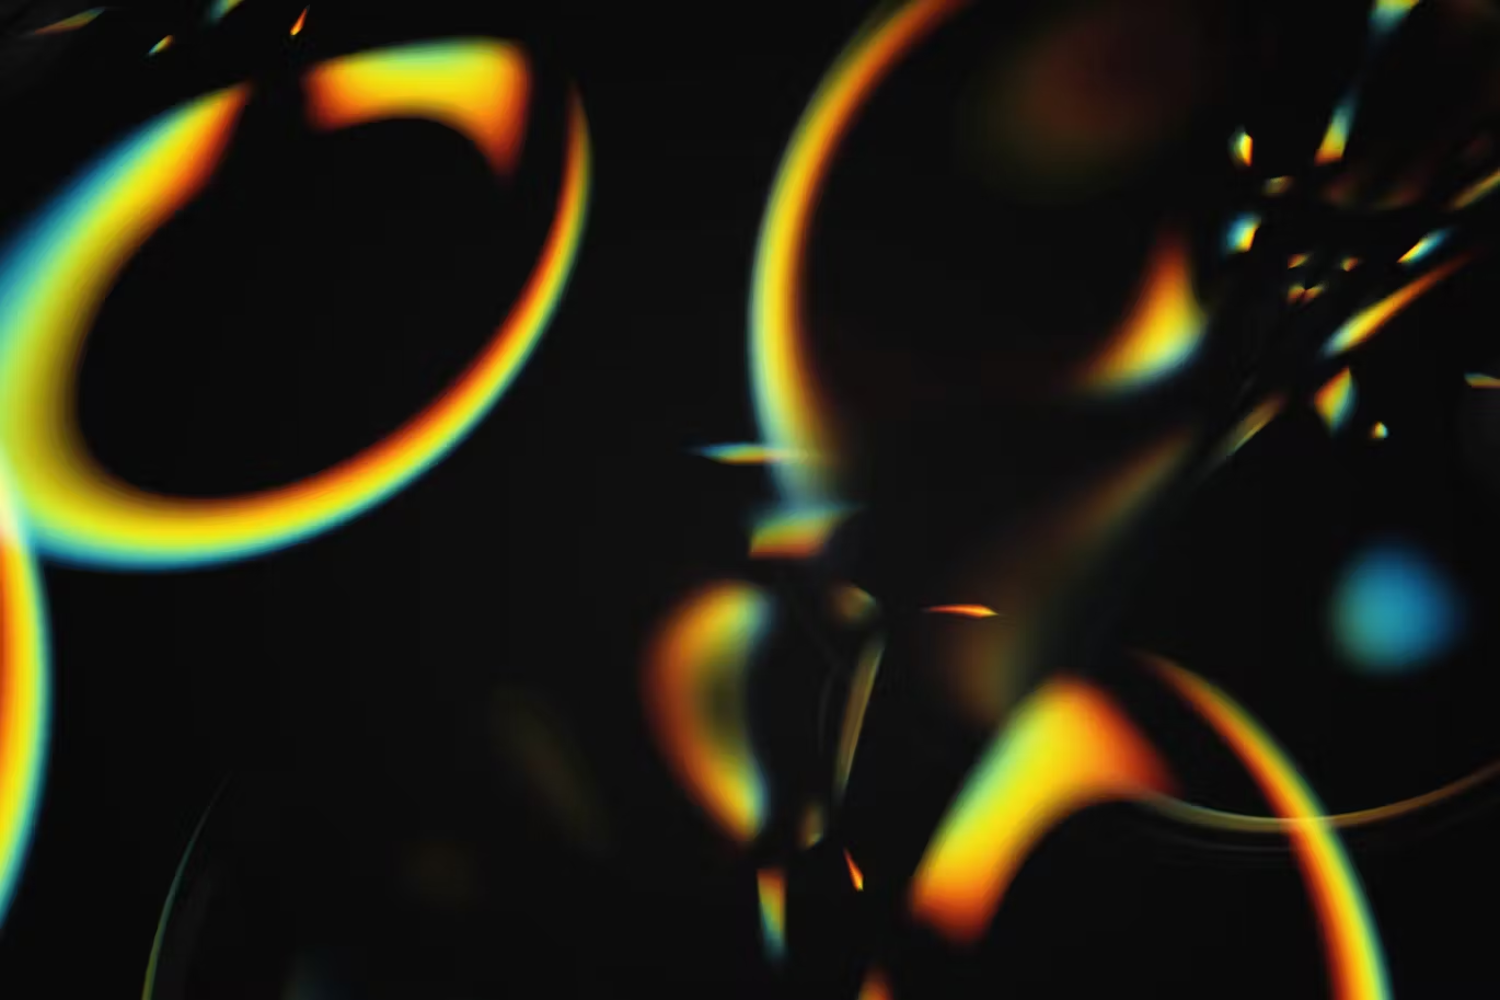 6038 高清多功能全息气泡背景素材-Holographic Bubbles Backgrounds